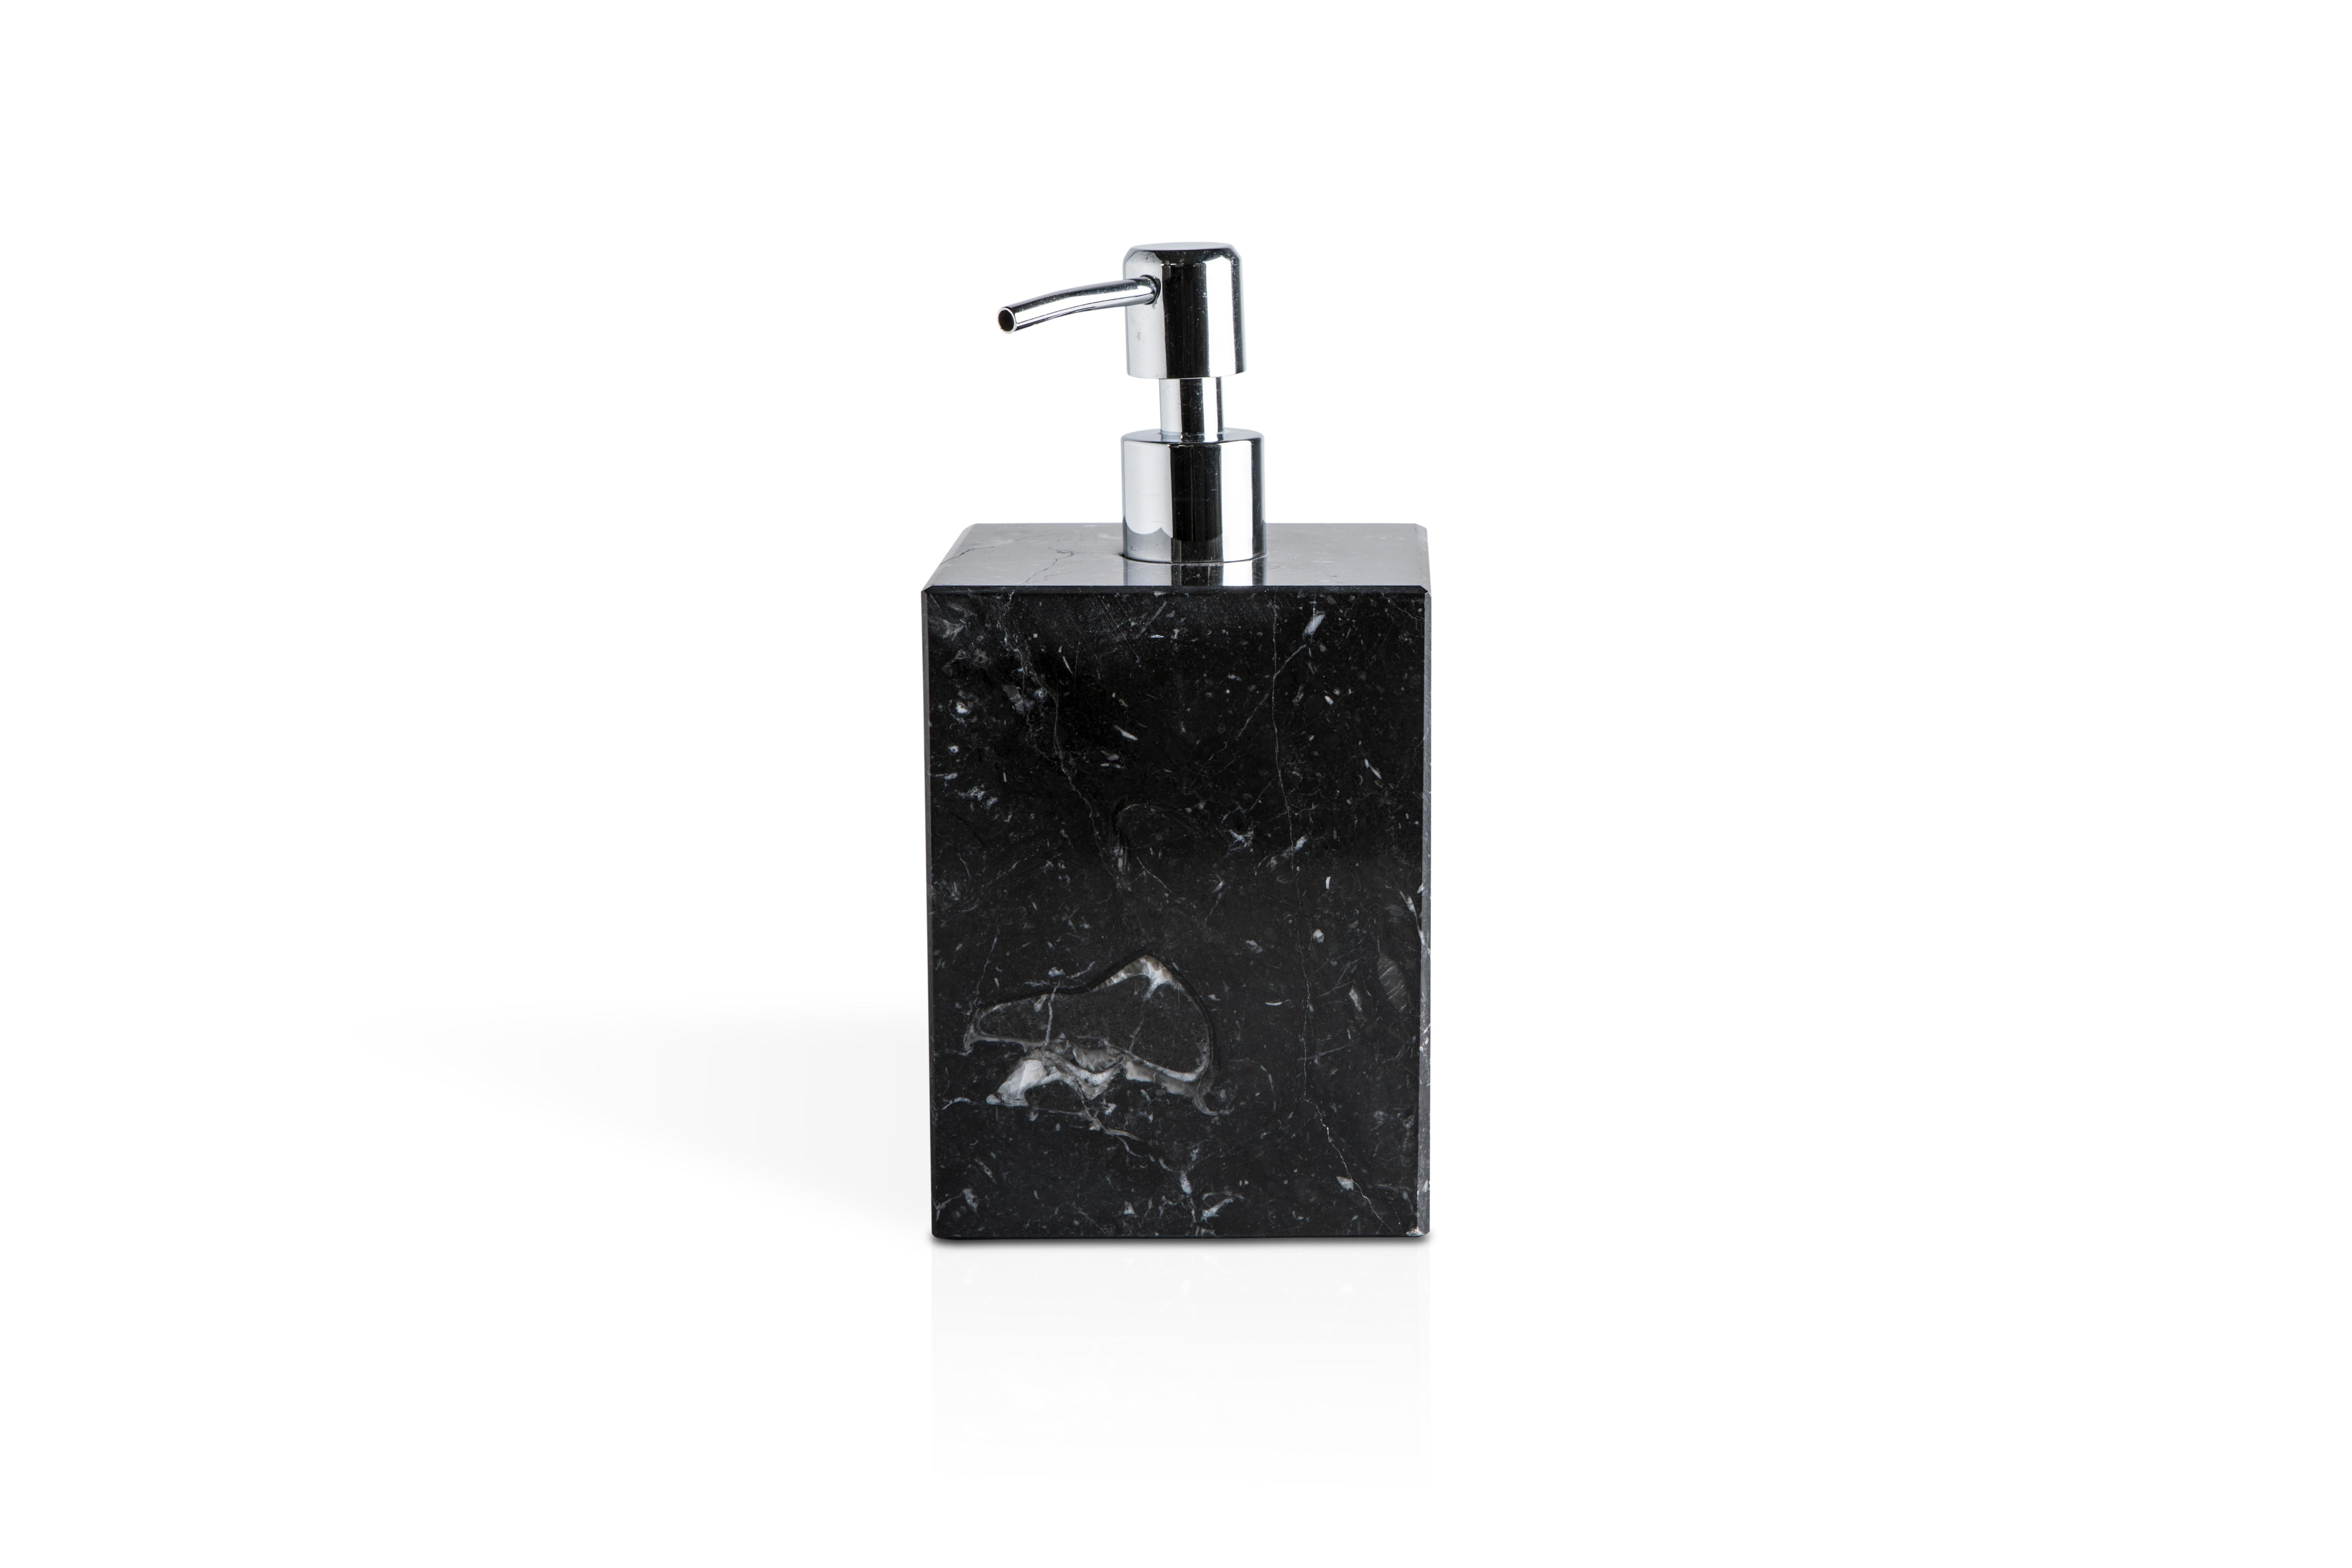 Ein quadratisches Set für das Badezimmer aus schwarzem Marquina-Marmor, bestehend aus: einem Seifenspender (9 x 9 x 19 cm), einer Seifenschale (10 x 13 x 2 cm), einem Zahnbürstenhalter (8,5 x 8,5 x 12 cm), einem Dosenhalter mit Deckel (9,5 x 9,5 x